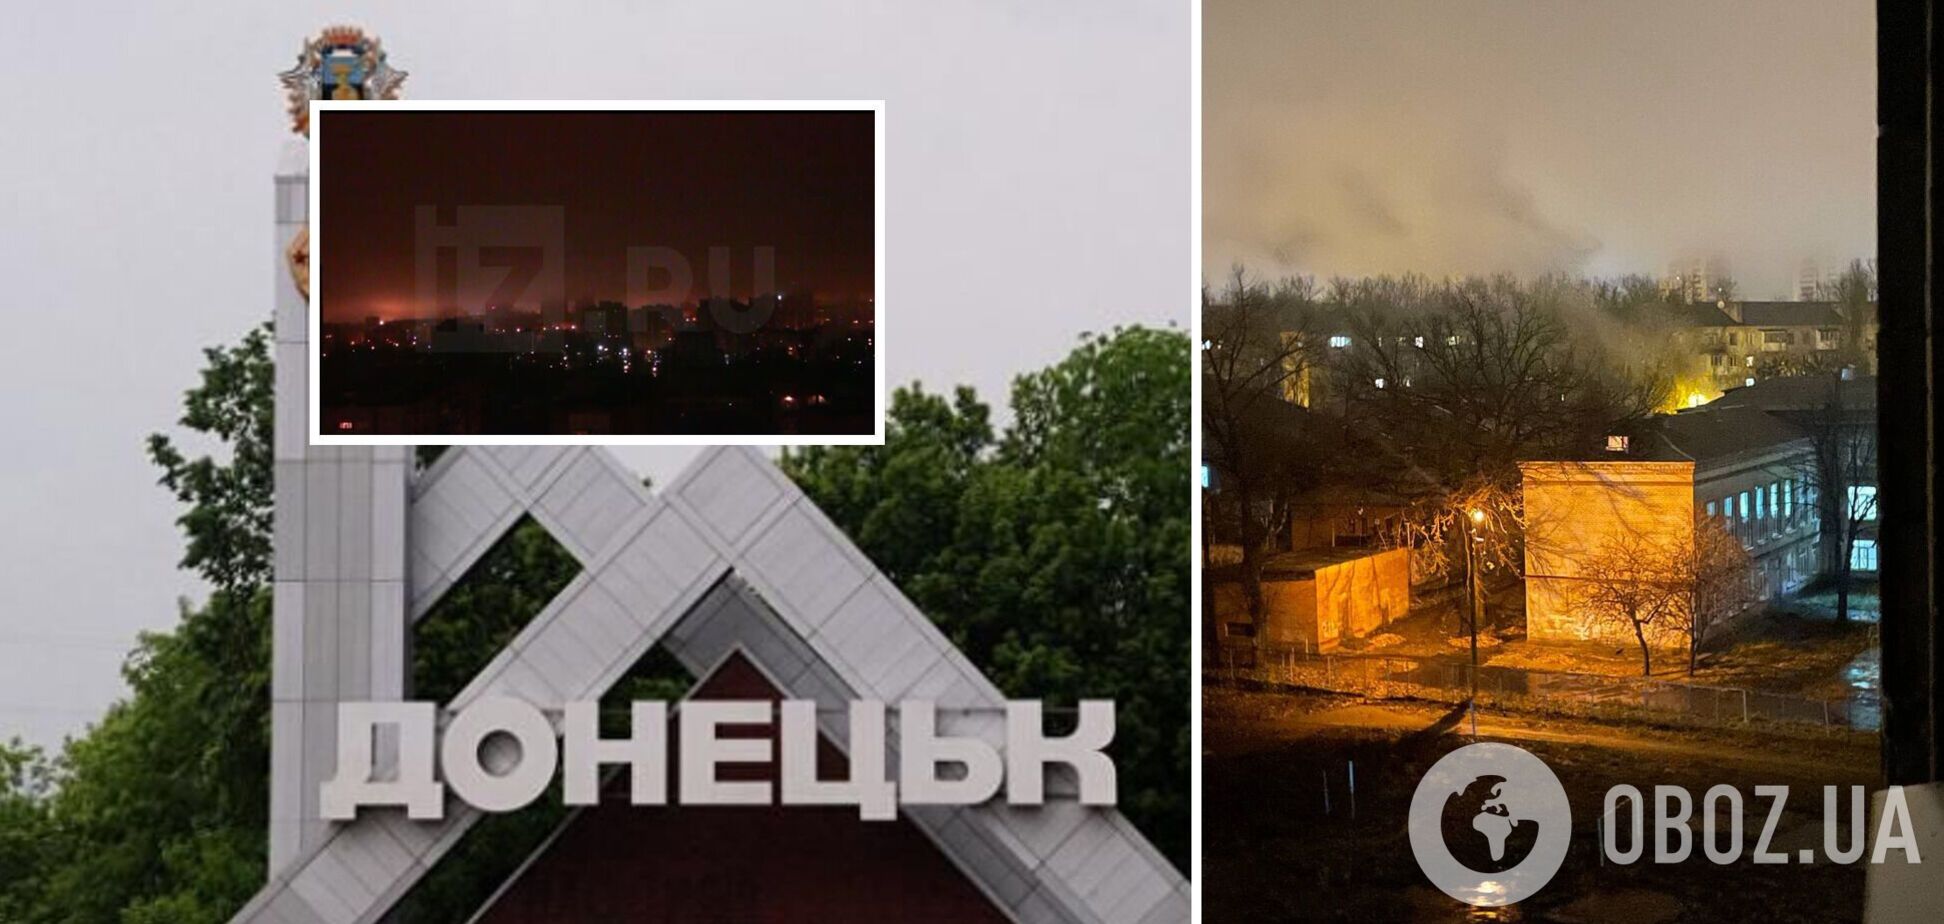 'Бавовна' добралась до Донецка, после серии взрывов начался пожар. Фото и видео